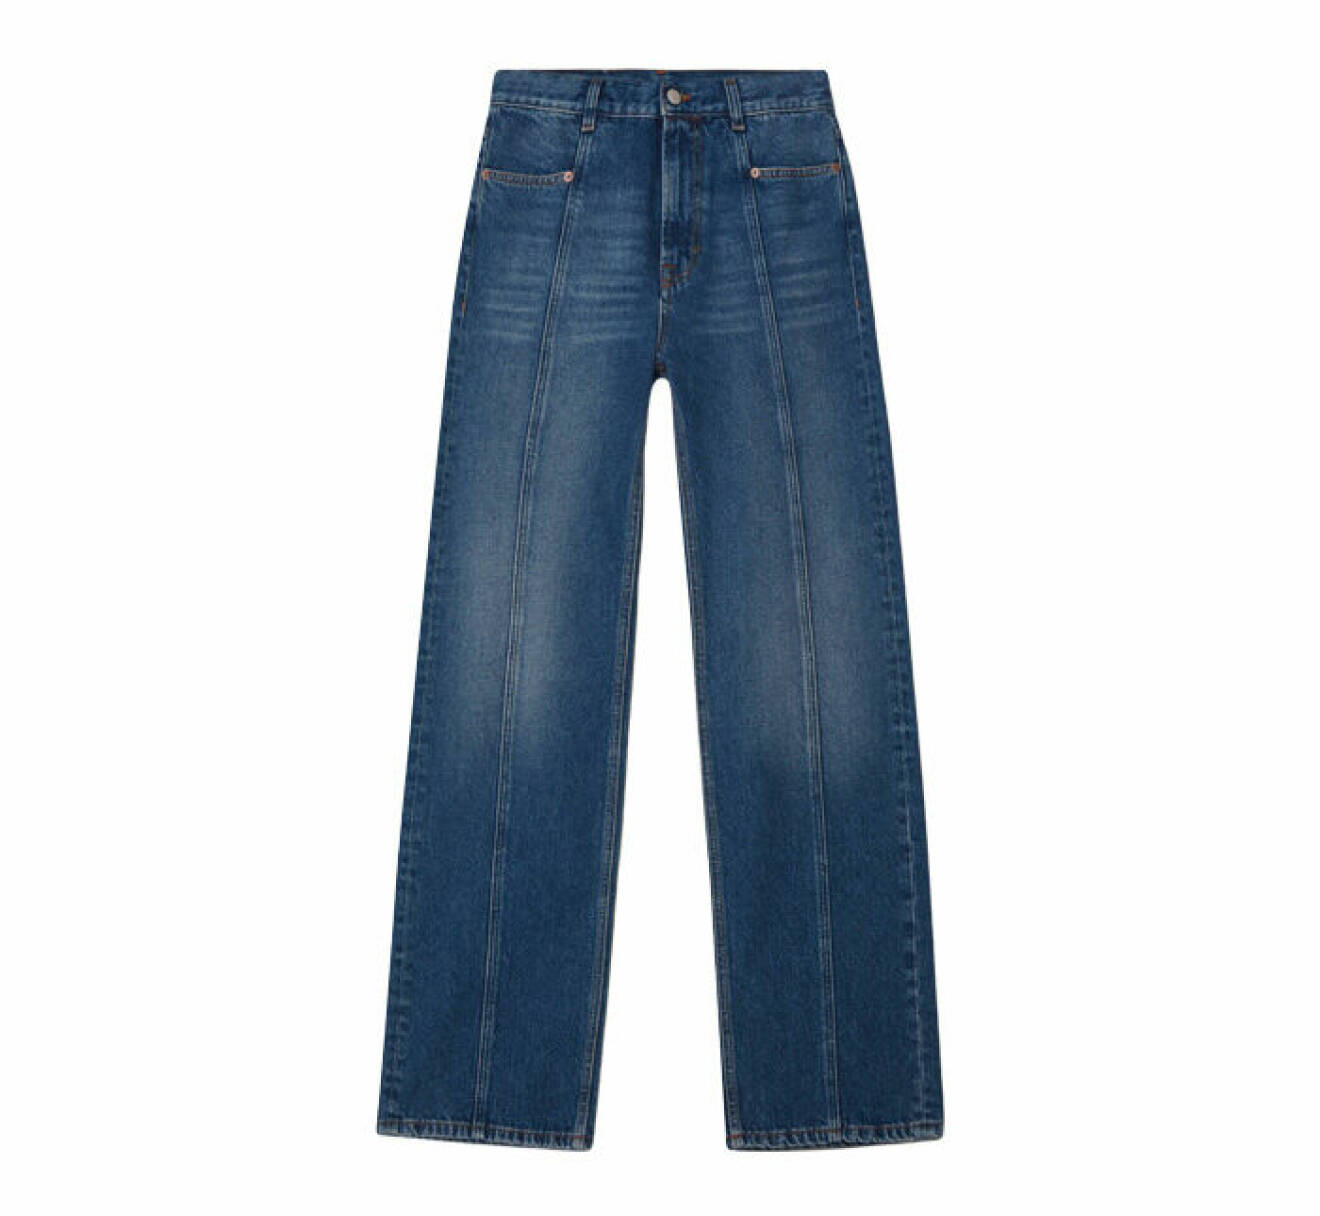 jeans från dagmars denimkollektion med lös passform och sömmar framtill